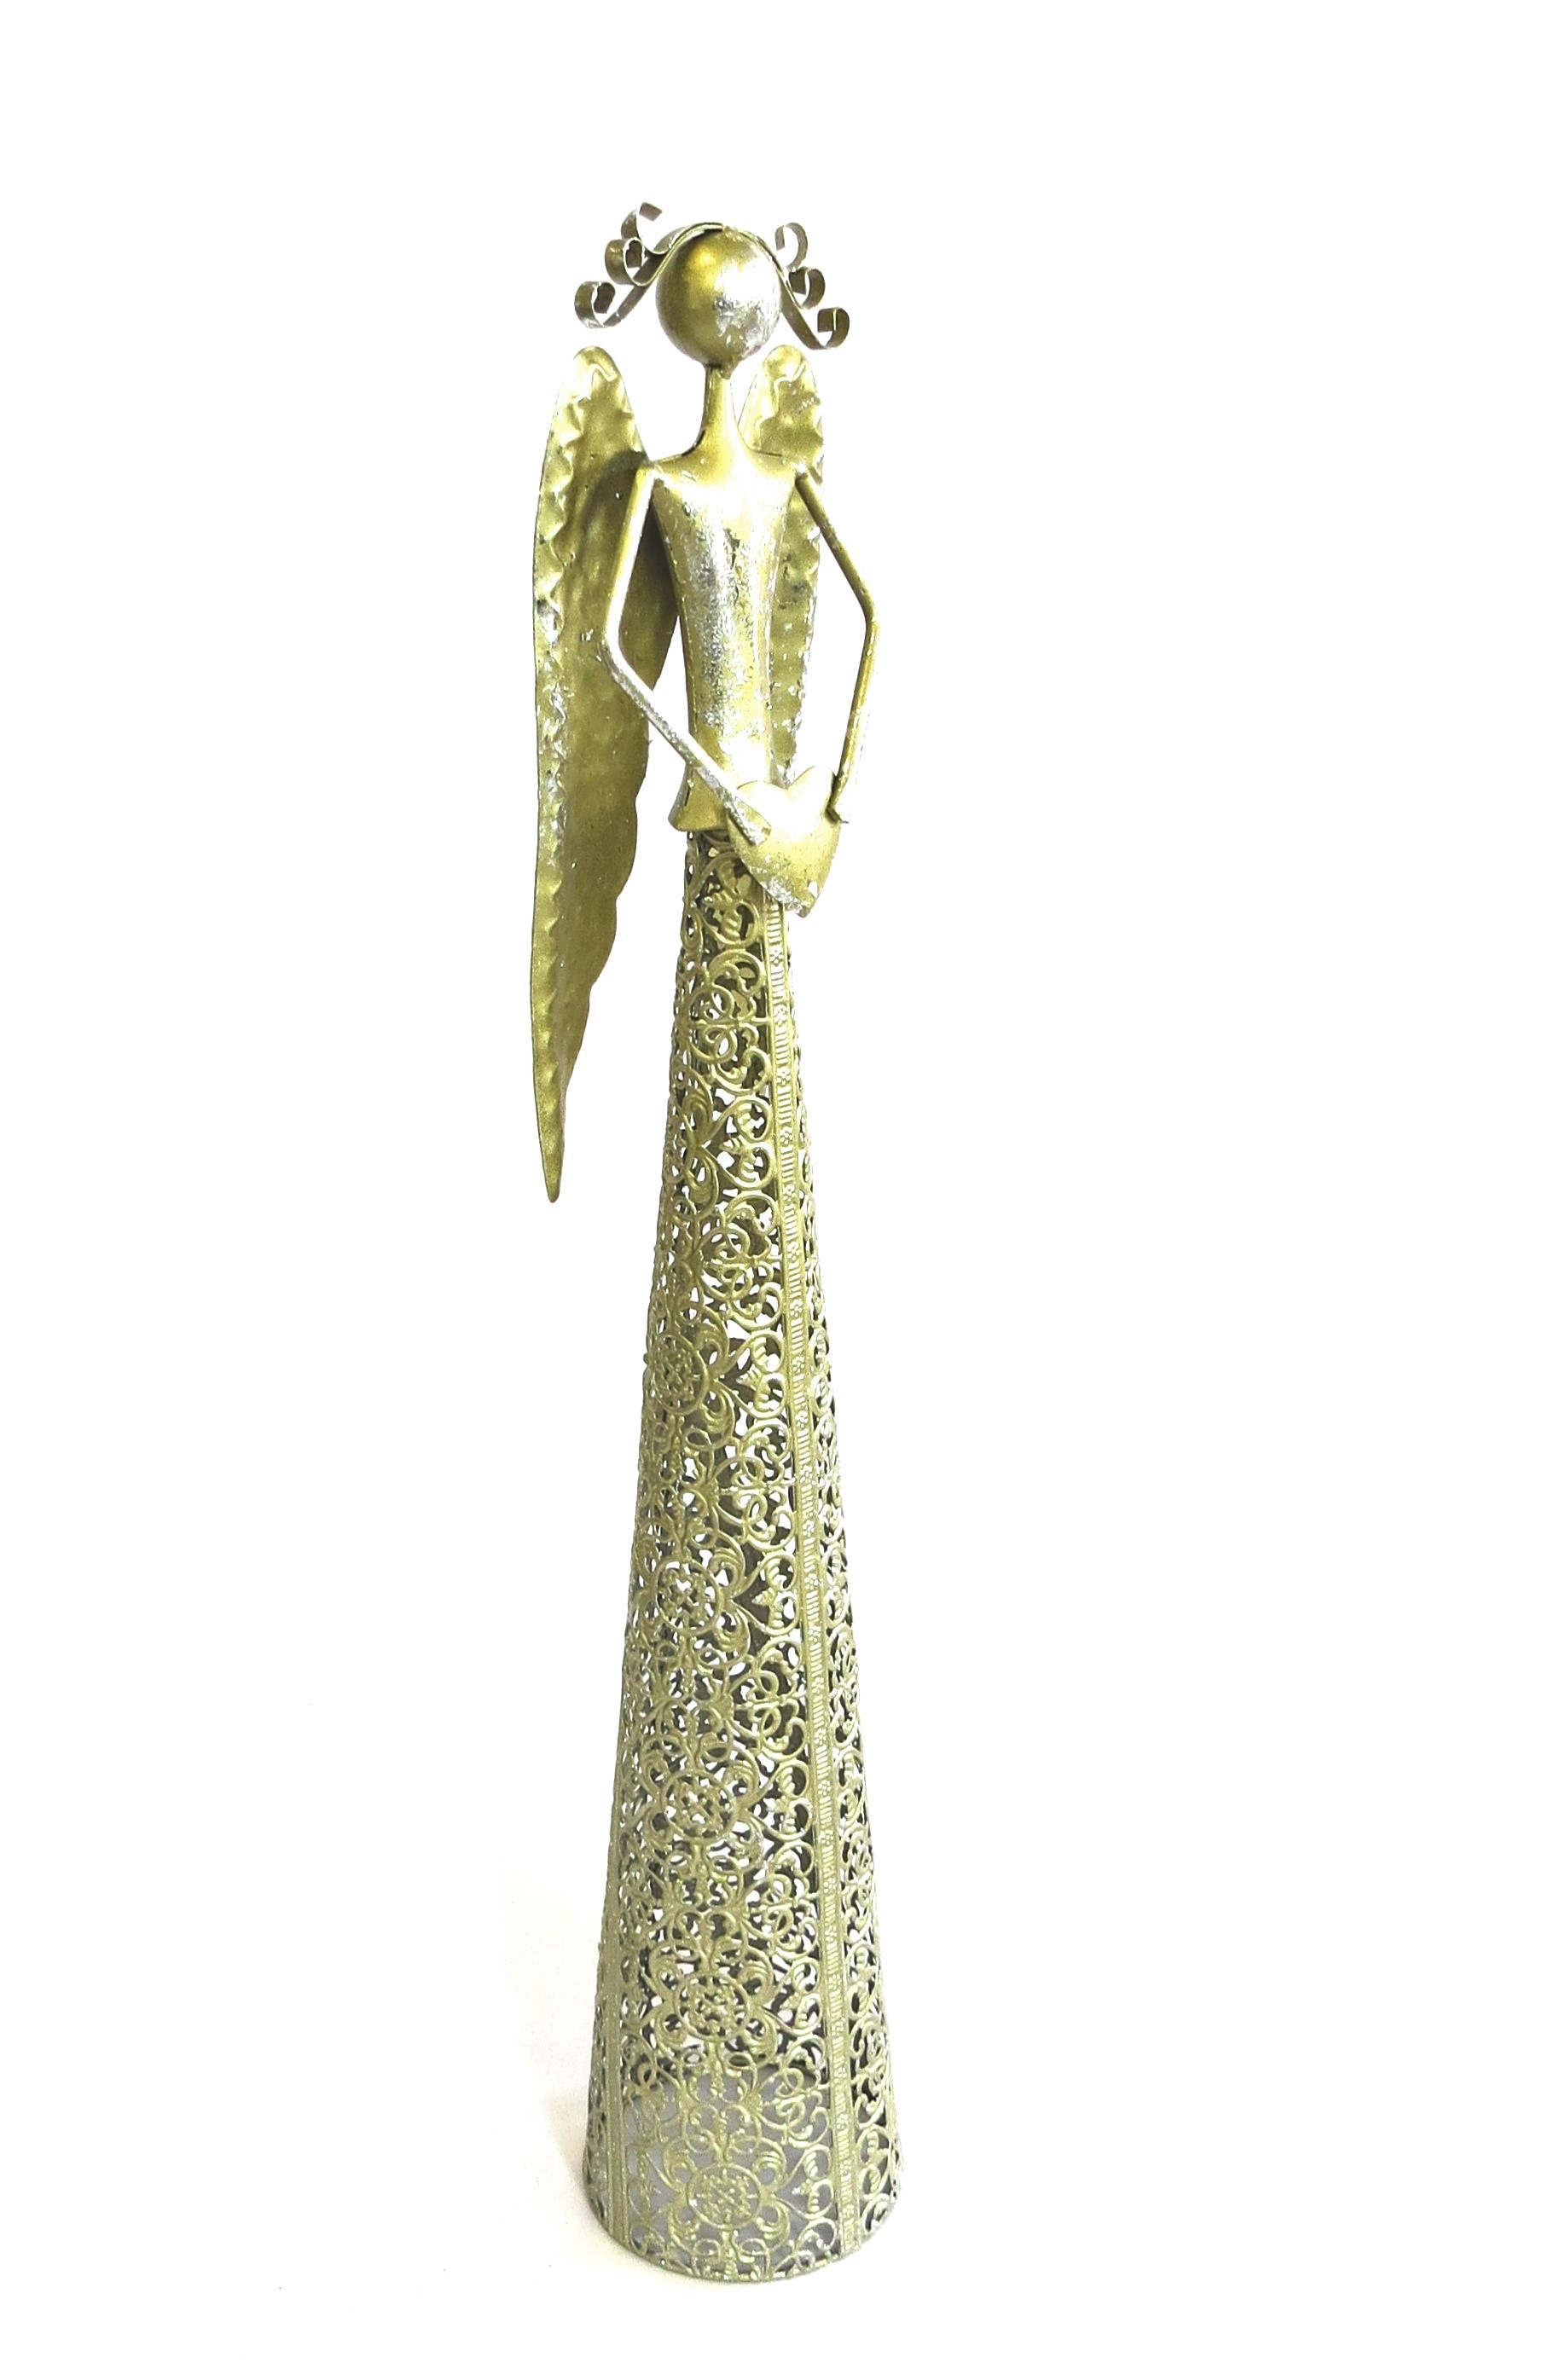 Deko Metall | Antik Weihnachten 56 cm XL Shabbyweiss Stil mit Engel Gold Herz